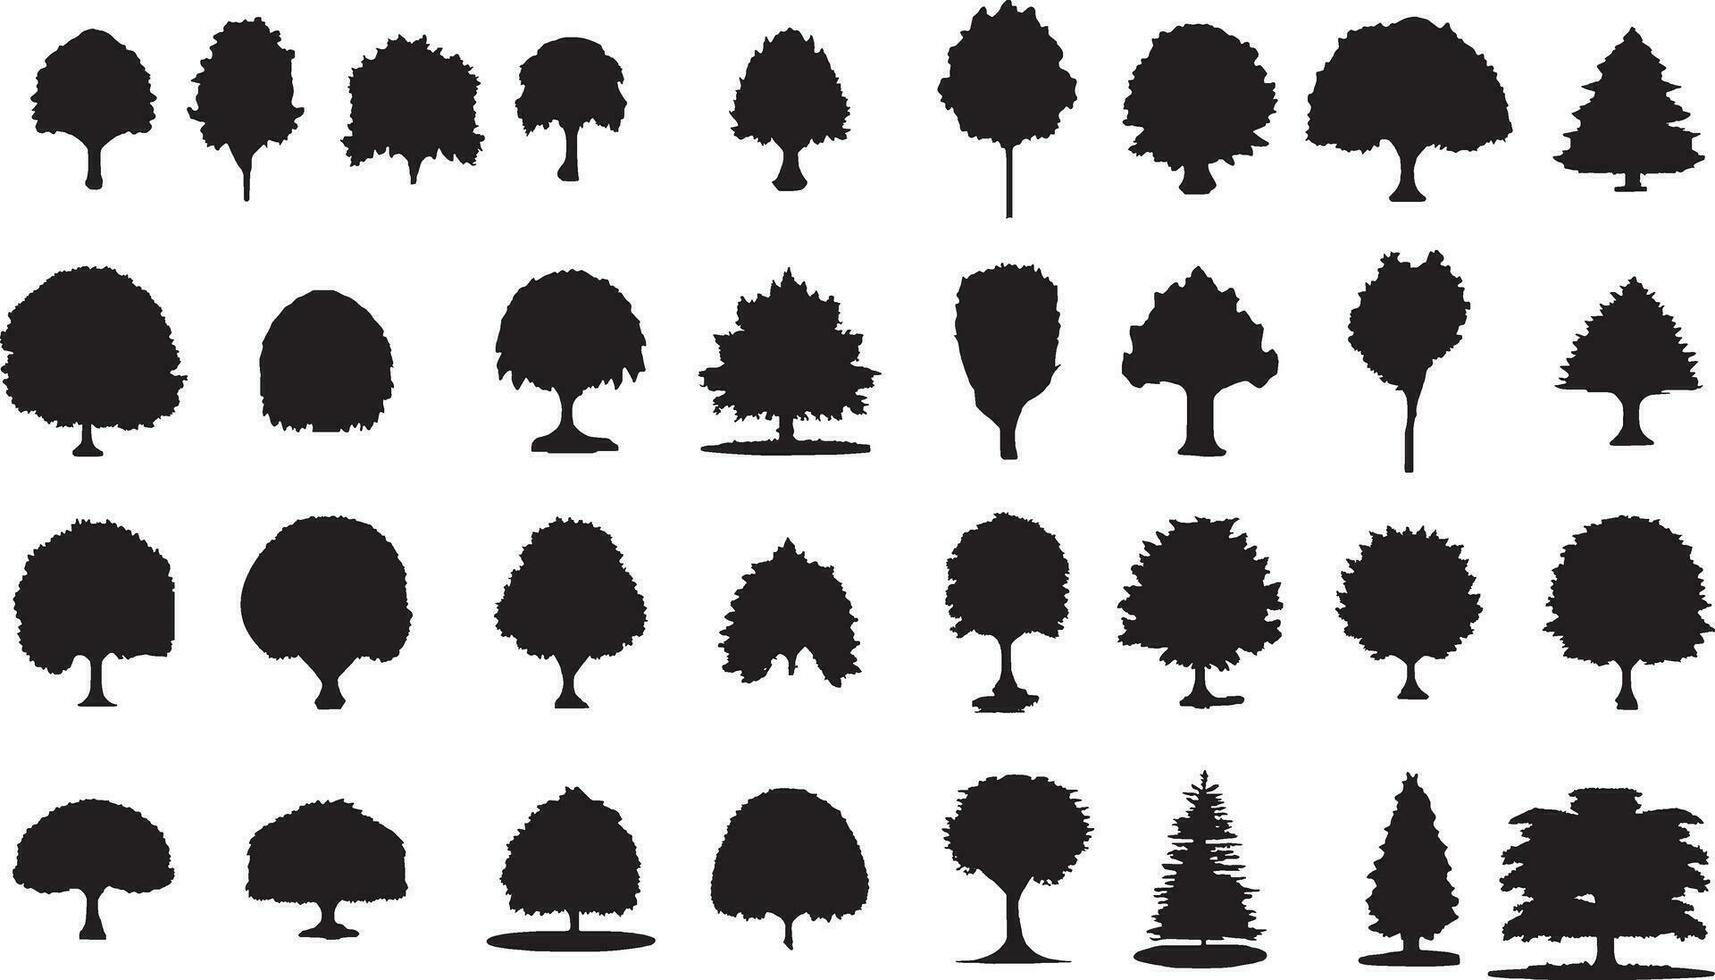 Vintage-Bäume und Waldsilhouetten im monochromen Stil isolierte Vektorillustration vektor